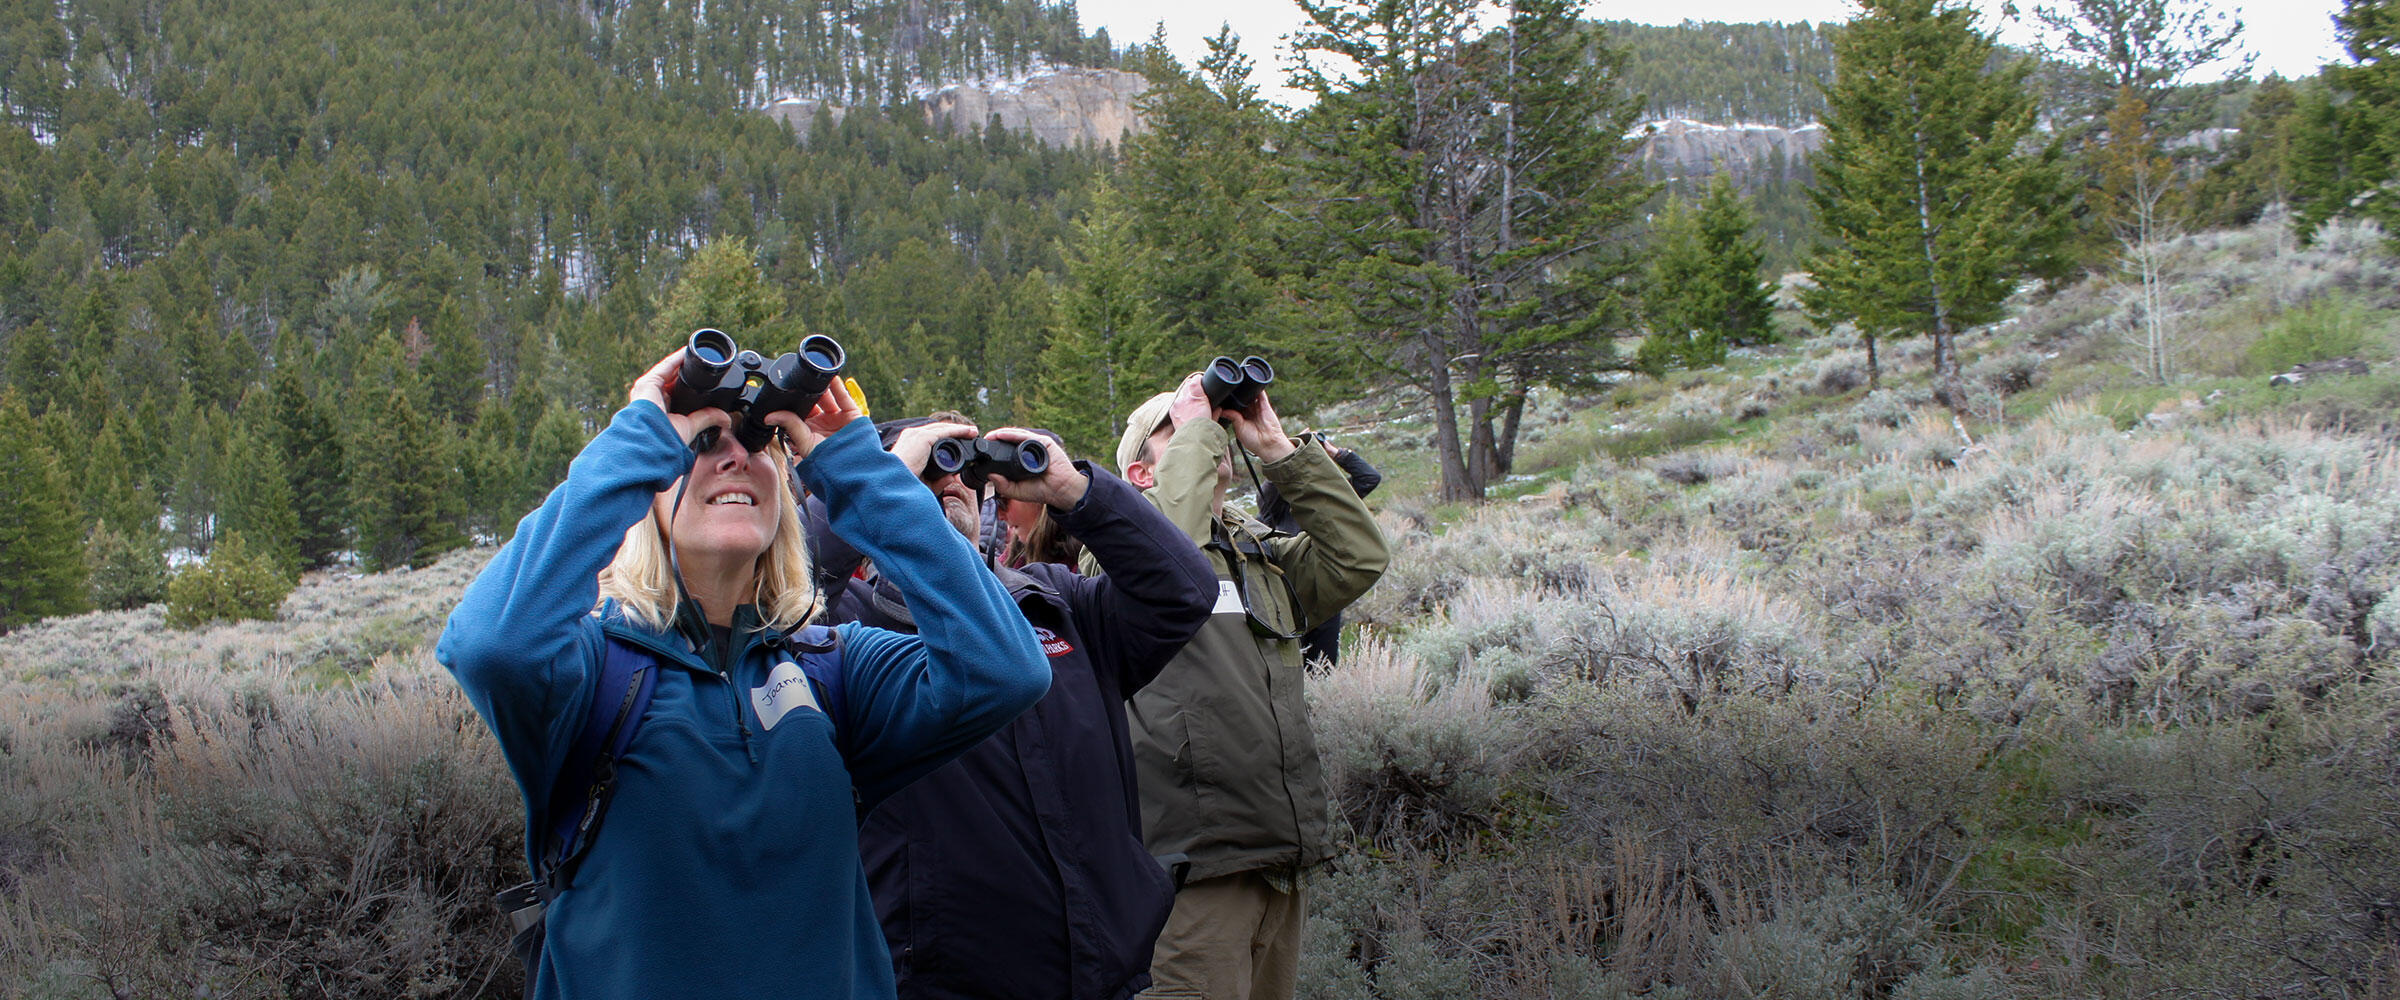 People look through binoculars in sagebrush meadow.